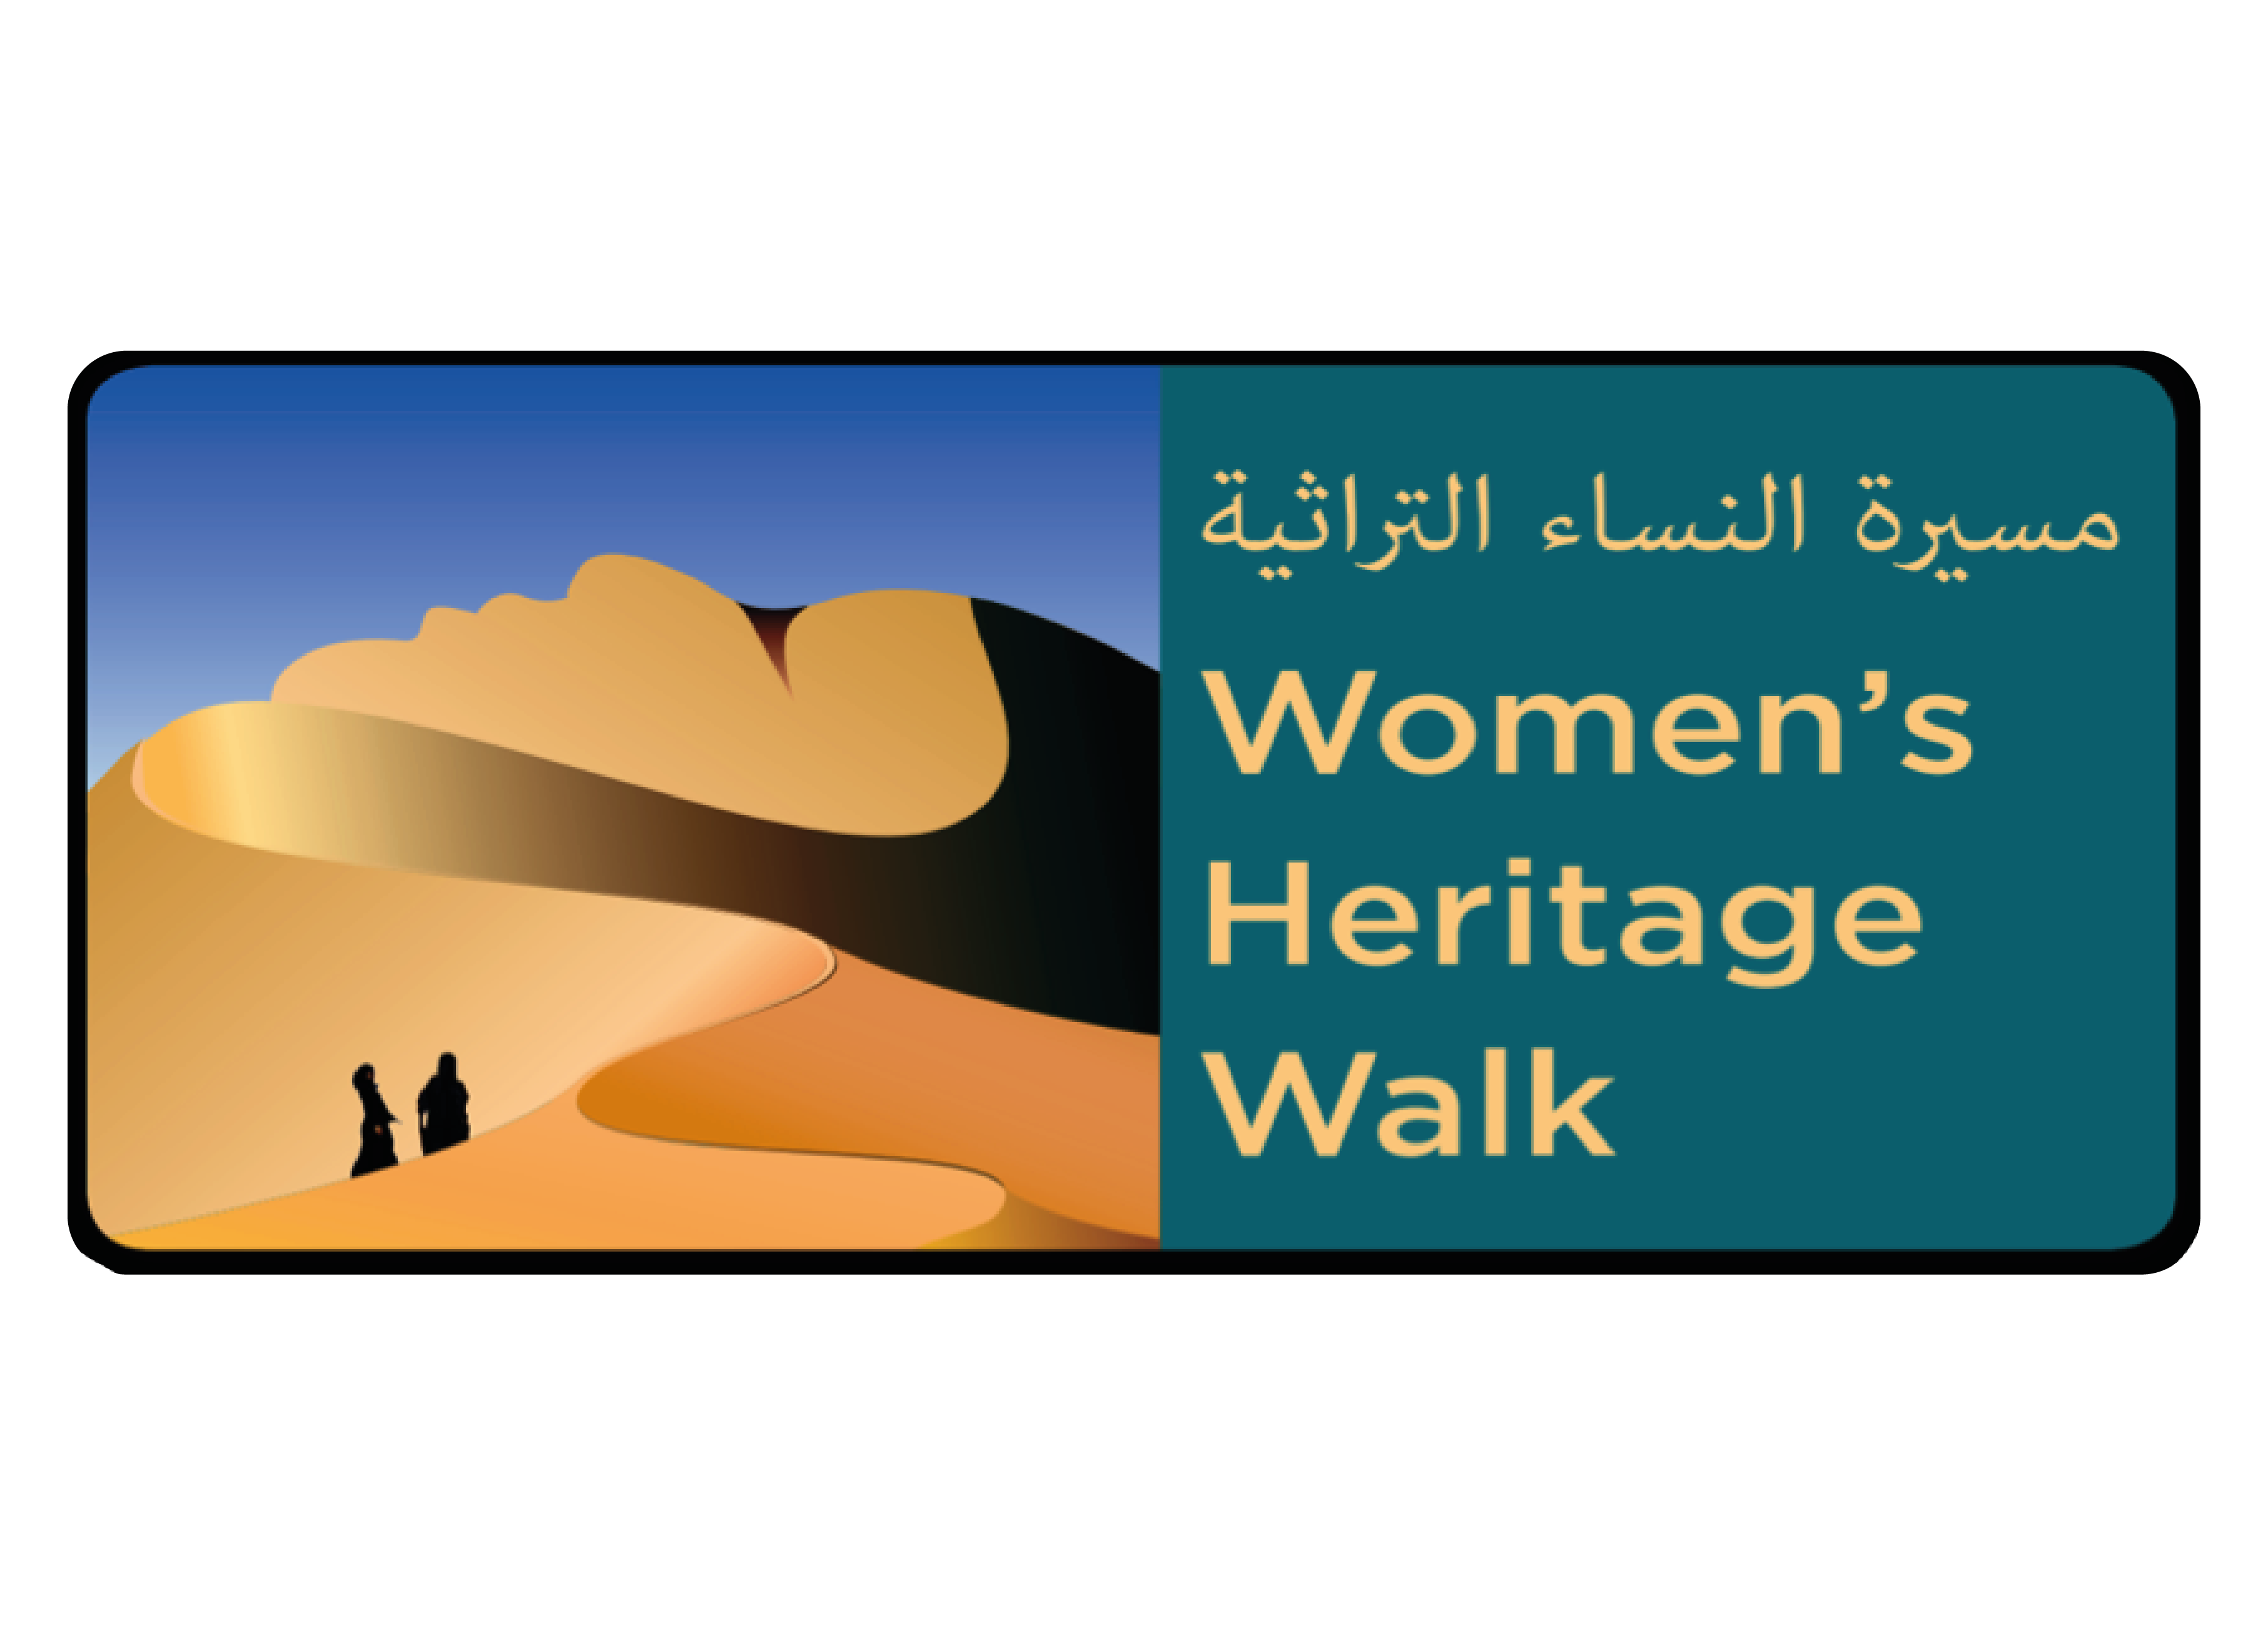 Women's Heritage Walk